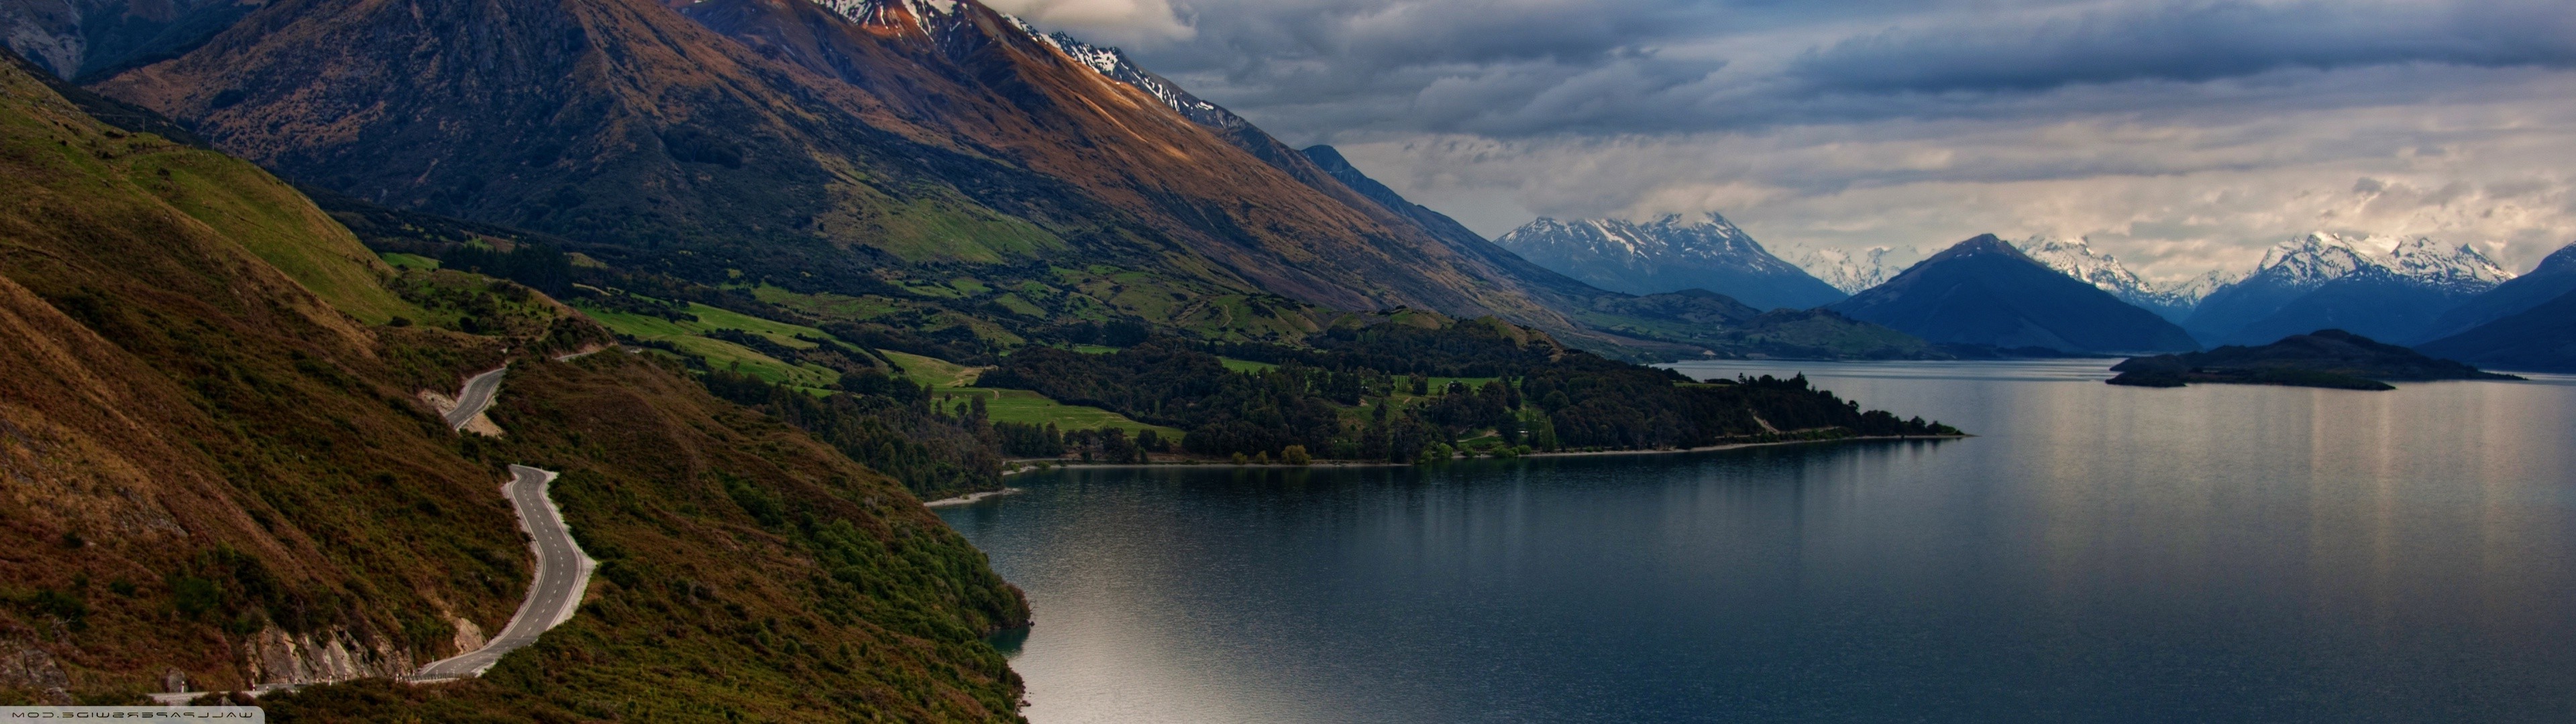 New Zealand, Mountains, Nature, Landscape, Lake, Lake Wakatipu Wallpaper